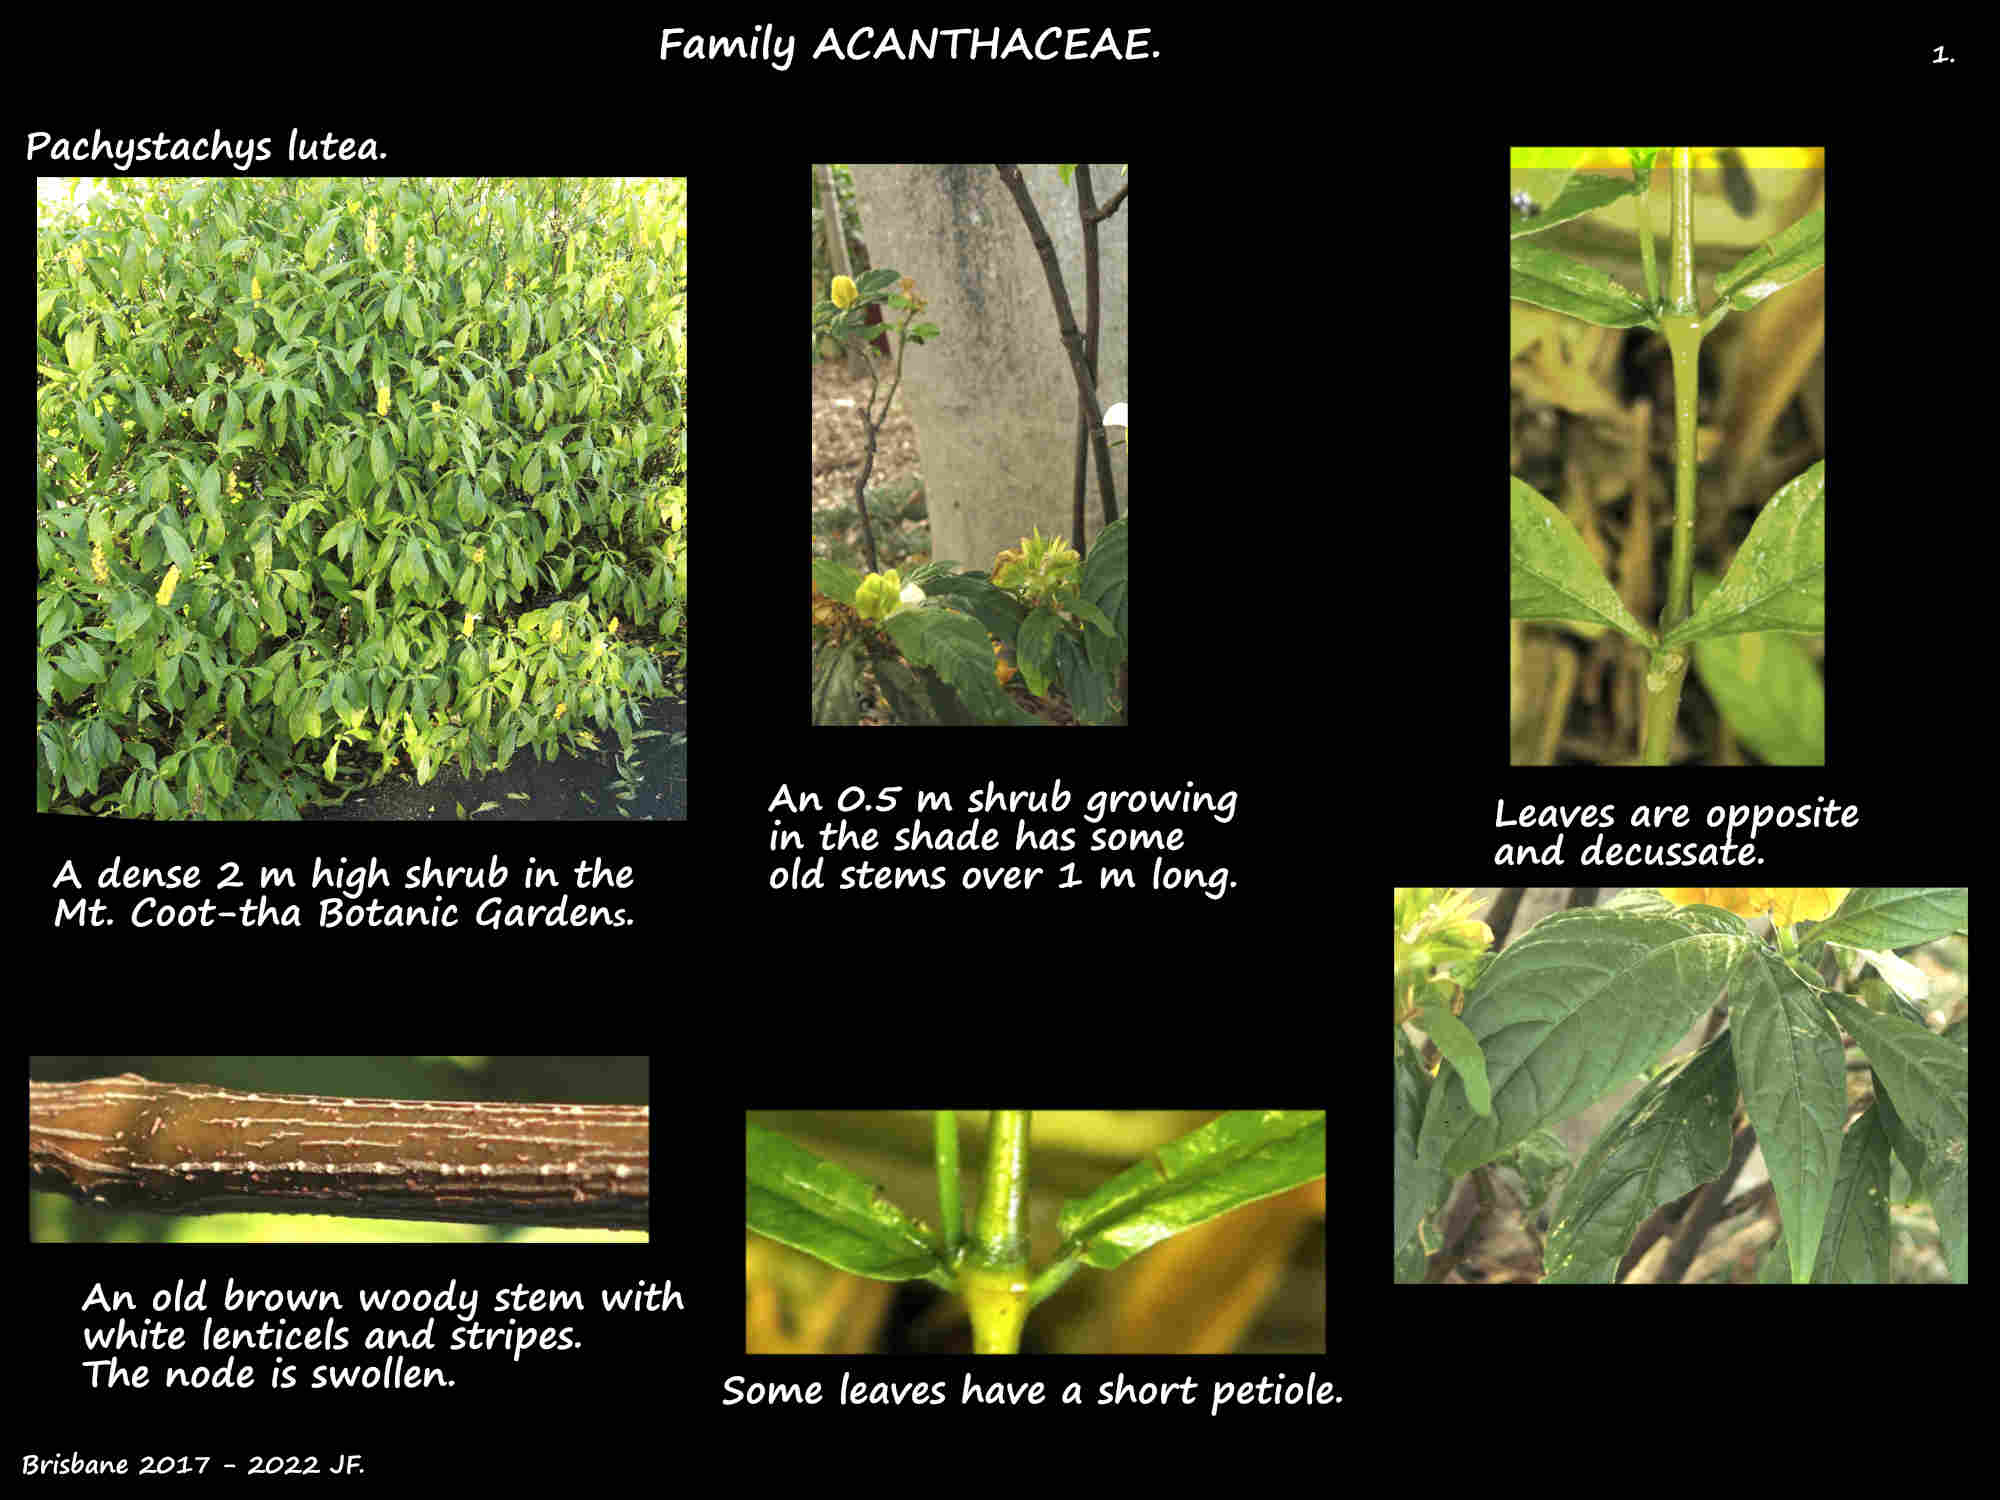 1 Pachystachys lutea plants & stems